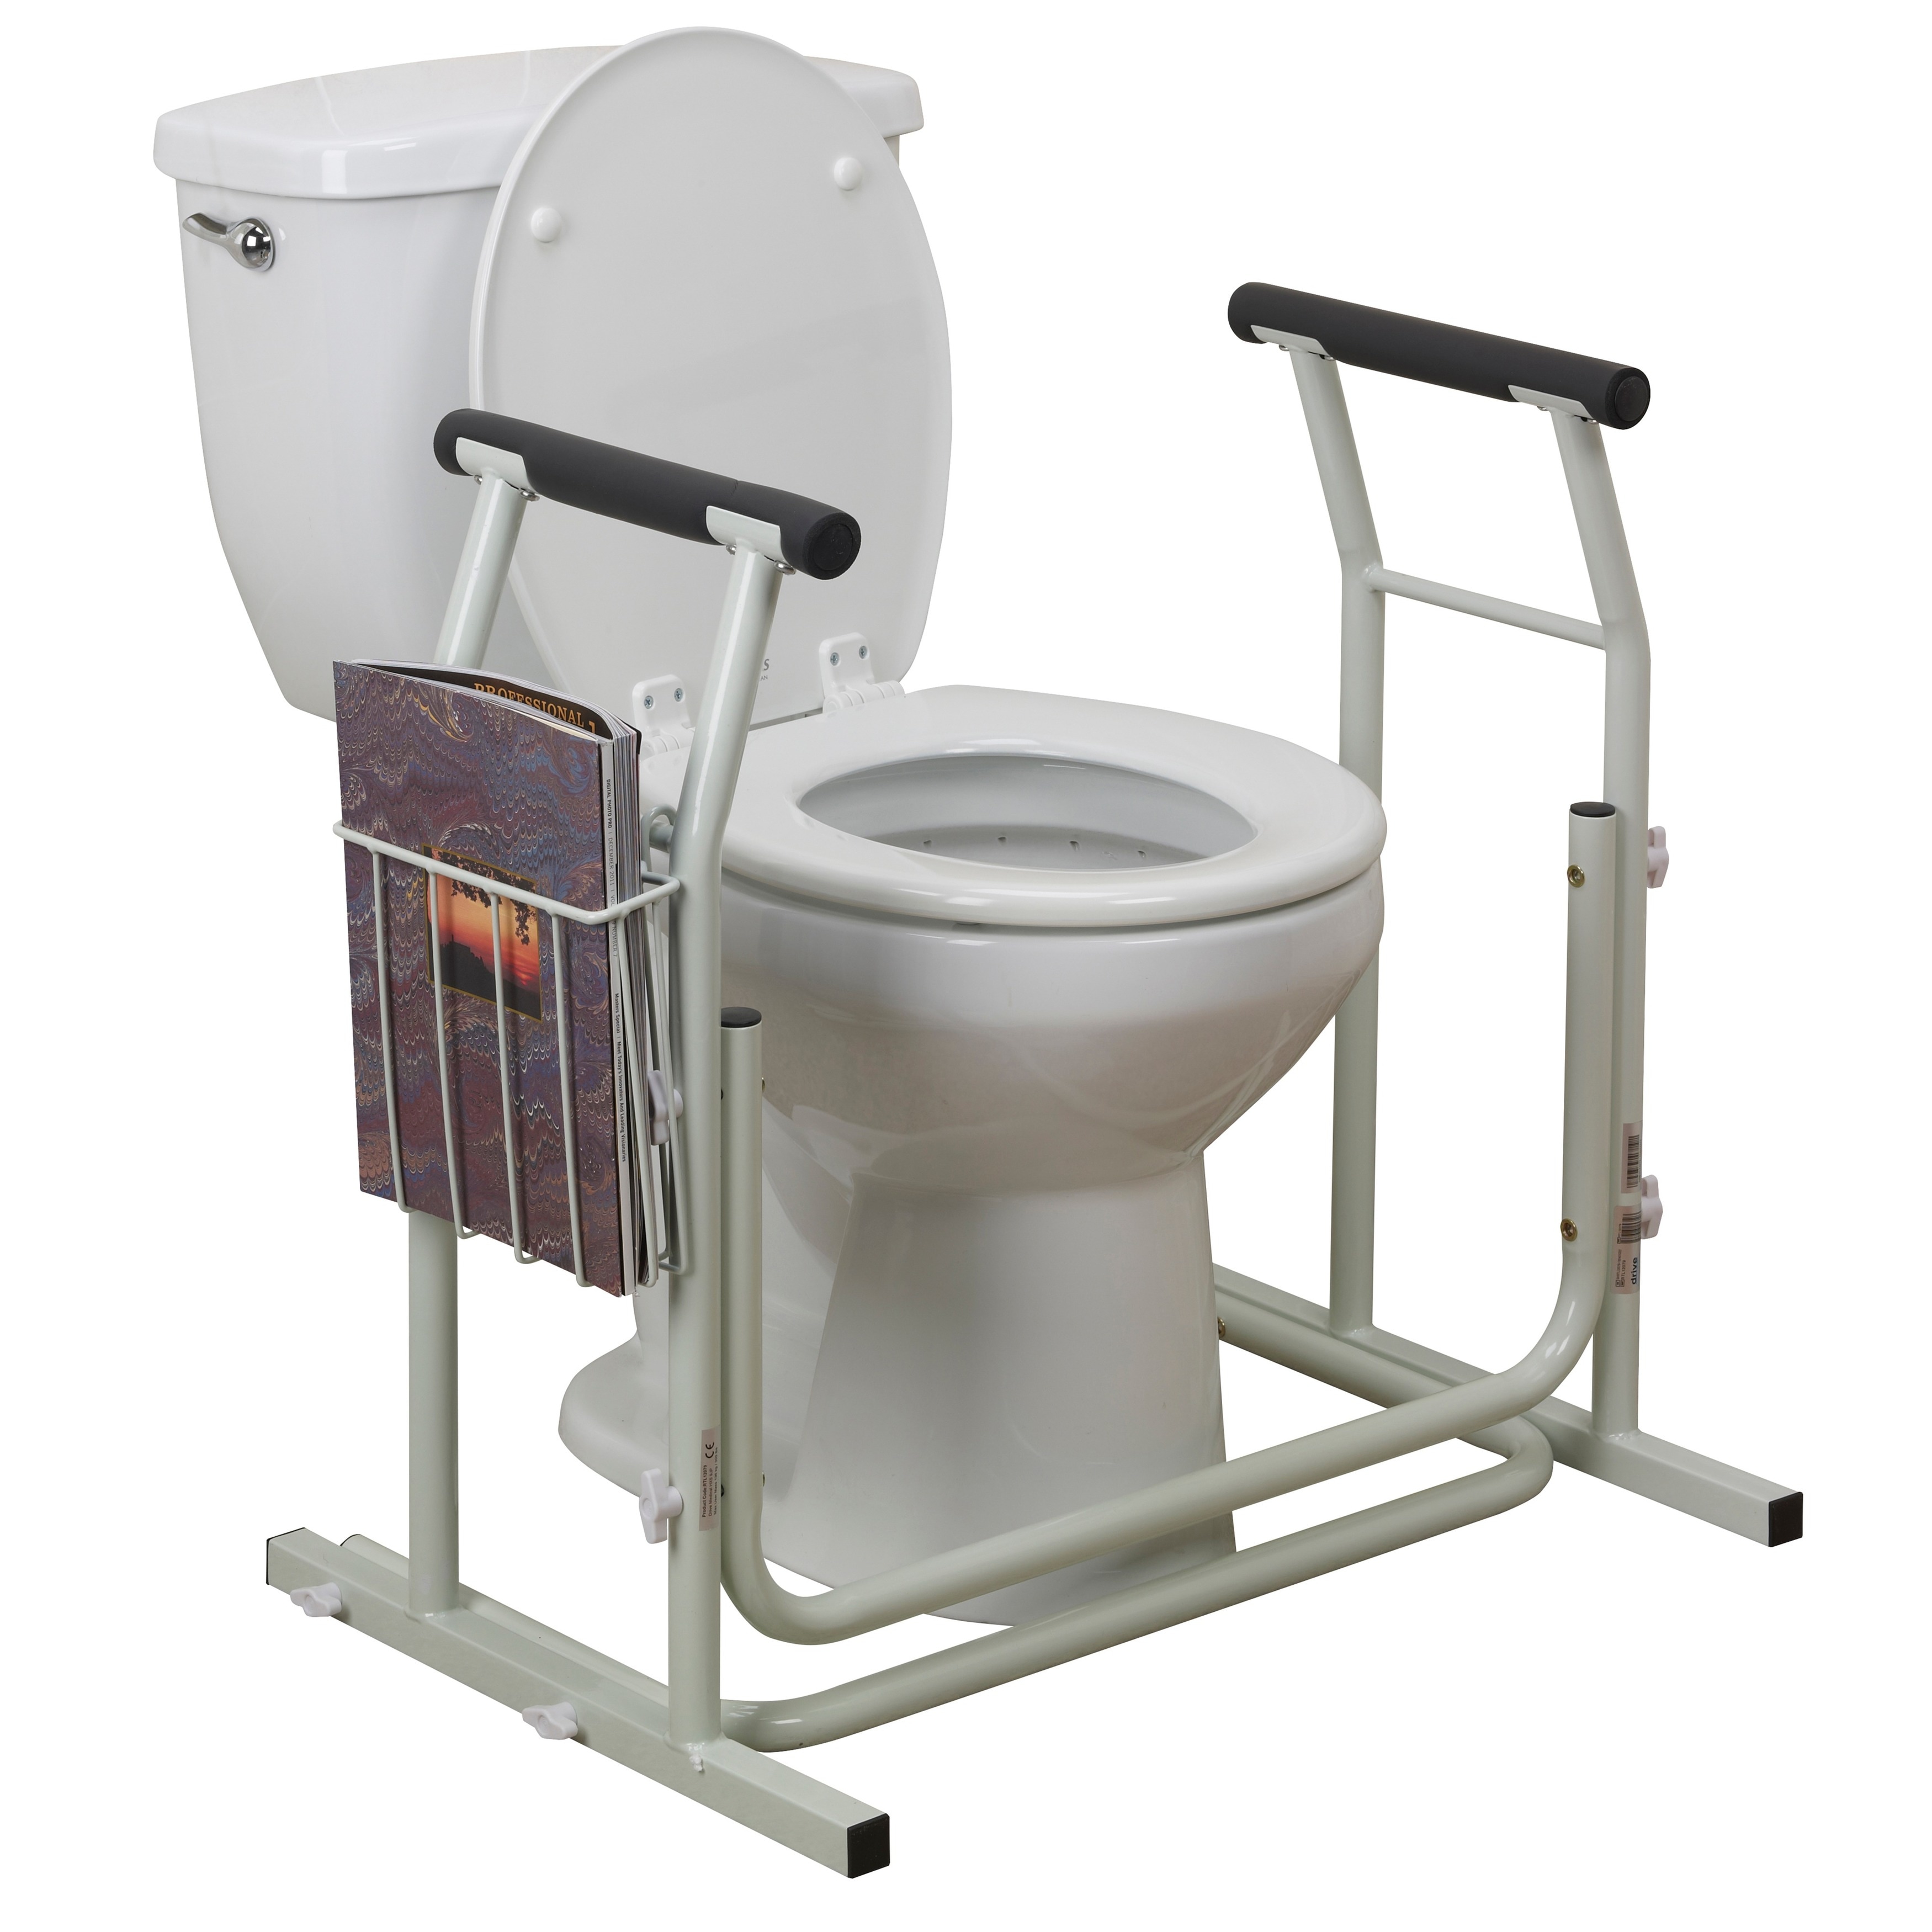 Туалет для инвалидов цена. Унитаз для инвалида с поручнем 9500/1.2/7.35. Подставка для биотуалета с поручнями med-04-027. Переносной туалет для инвалидов. Поручни для унитаза для пожилых.